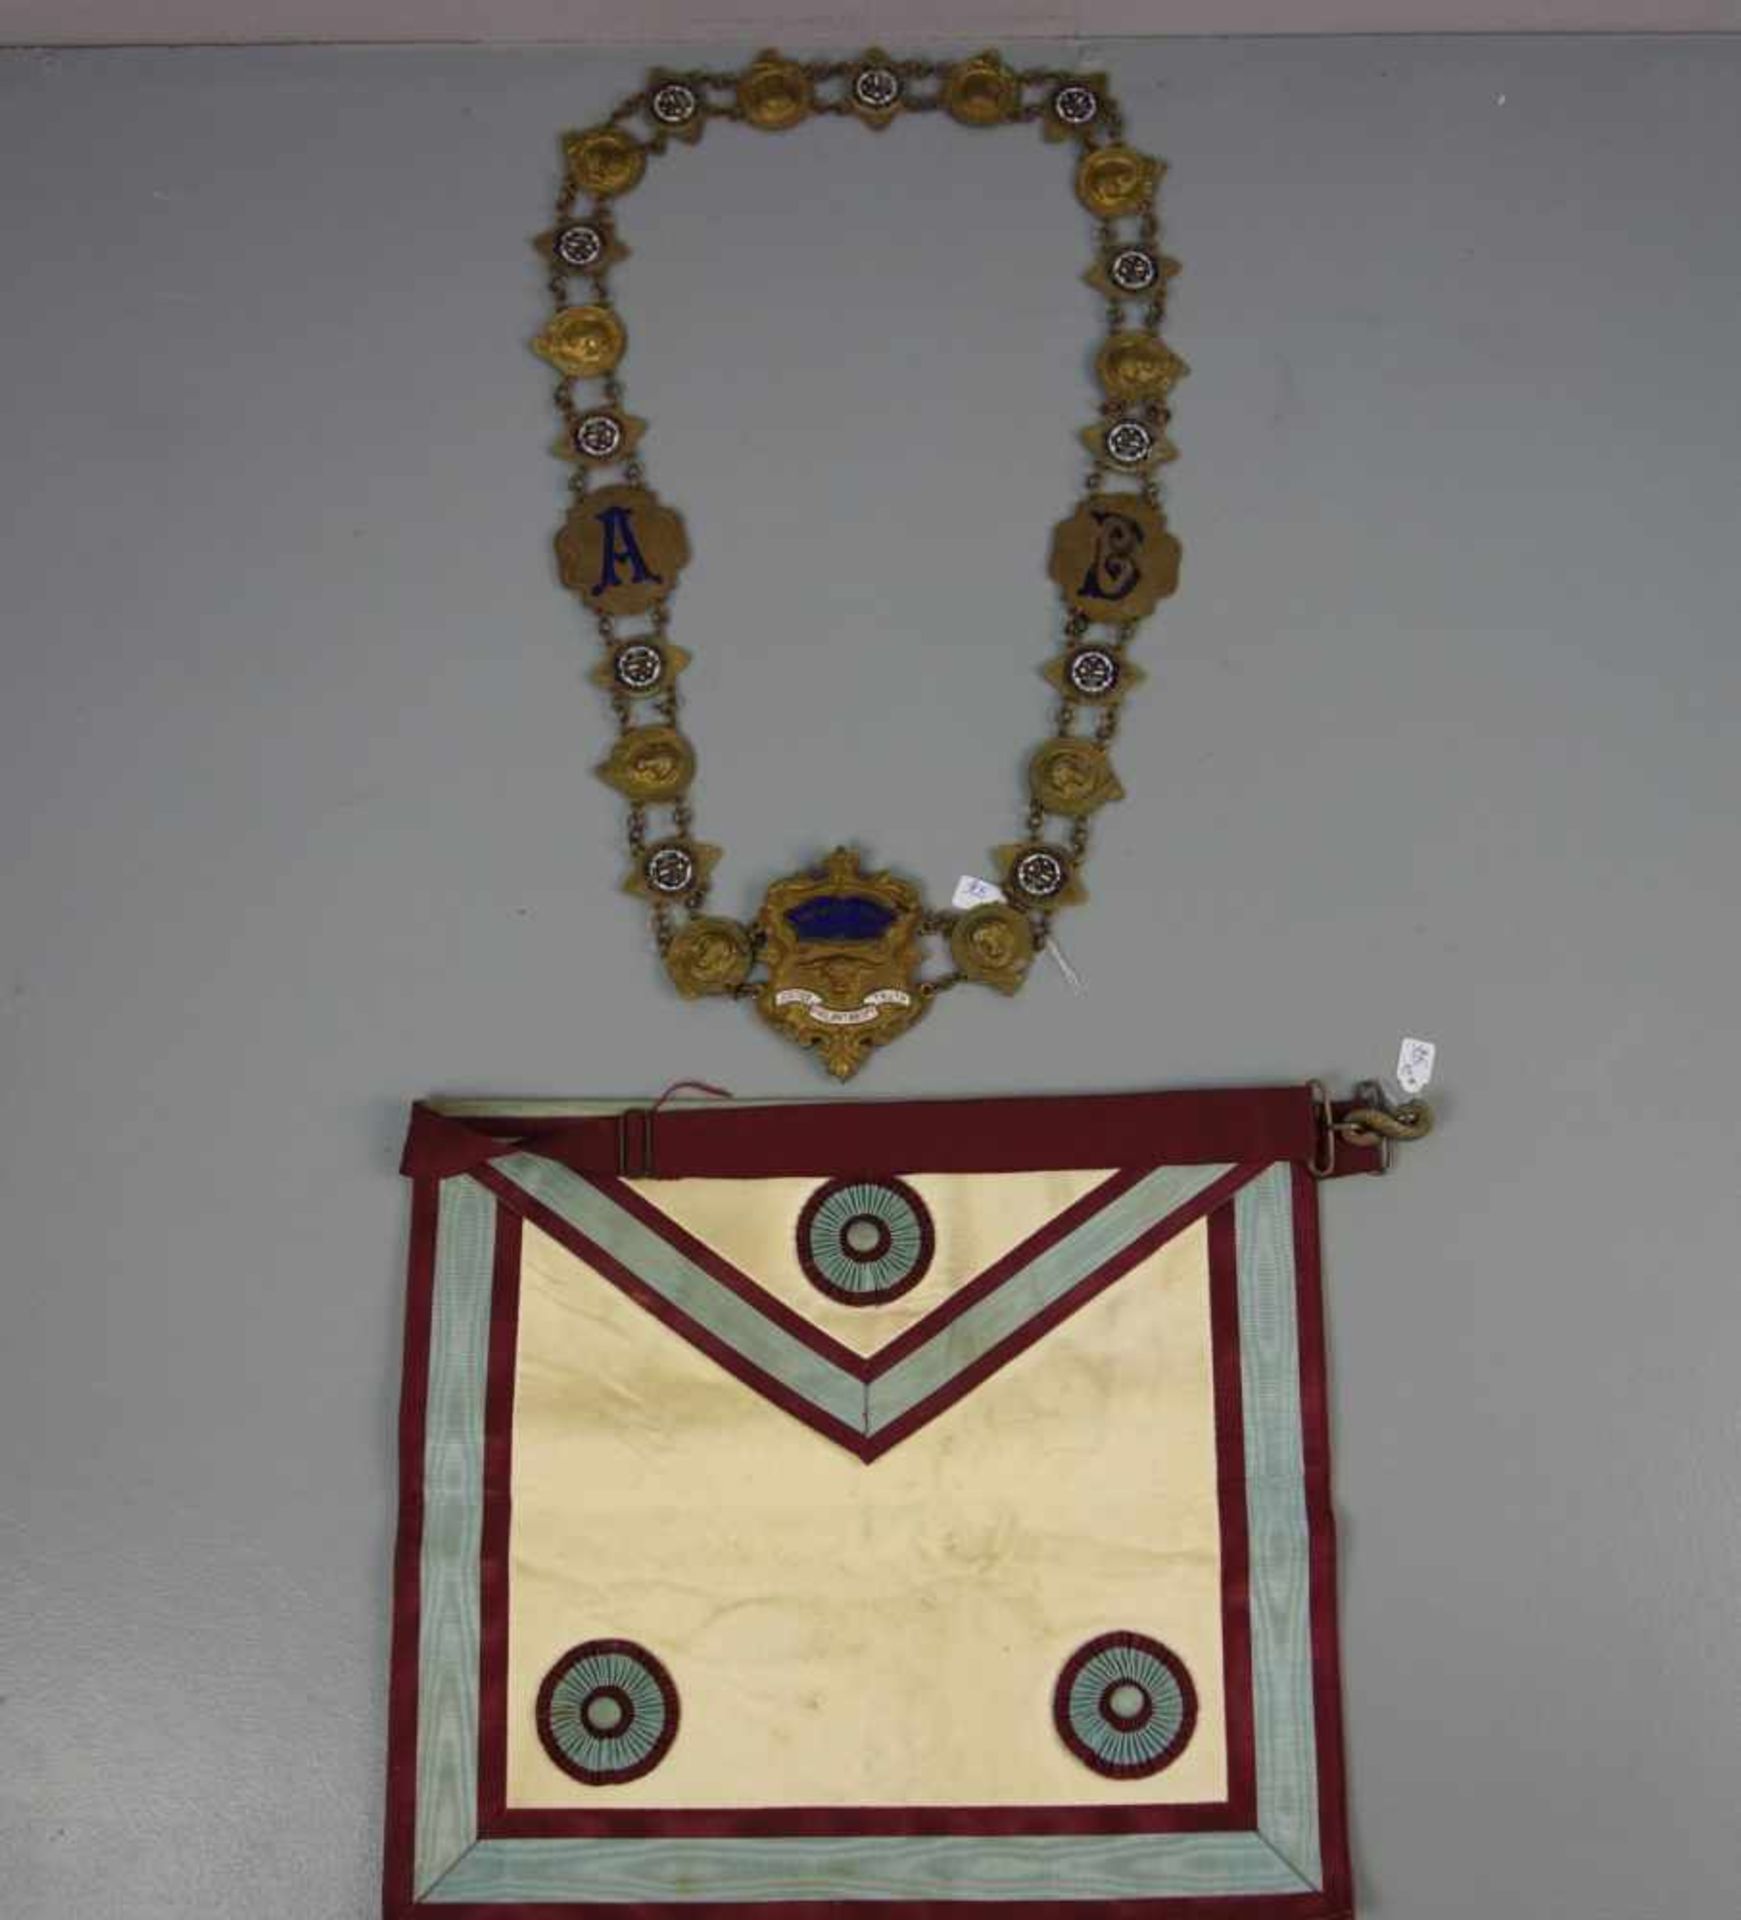 FREIMAURER - KETTE UND FREIMARUER - SCHÜRZE / masonic chain and ceremonial piece. - Bild 2 aus 6